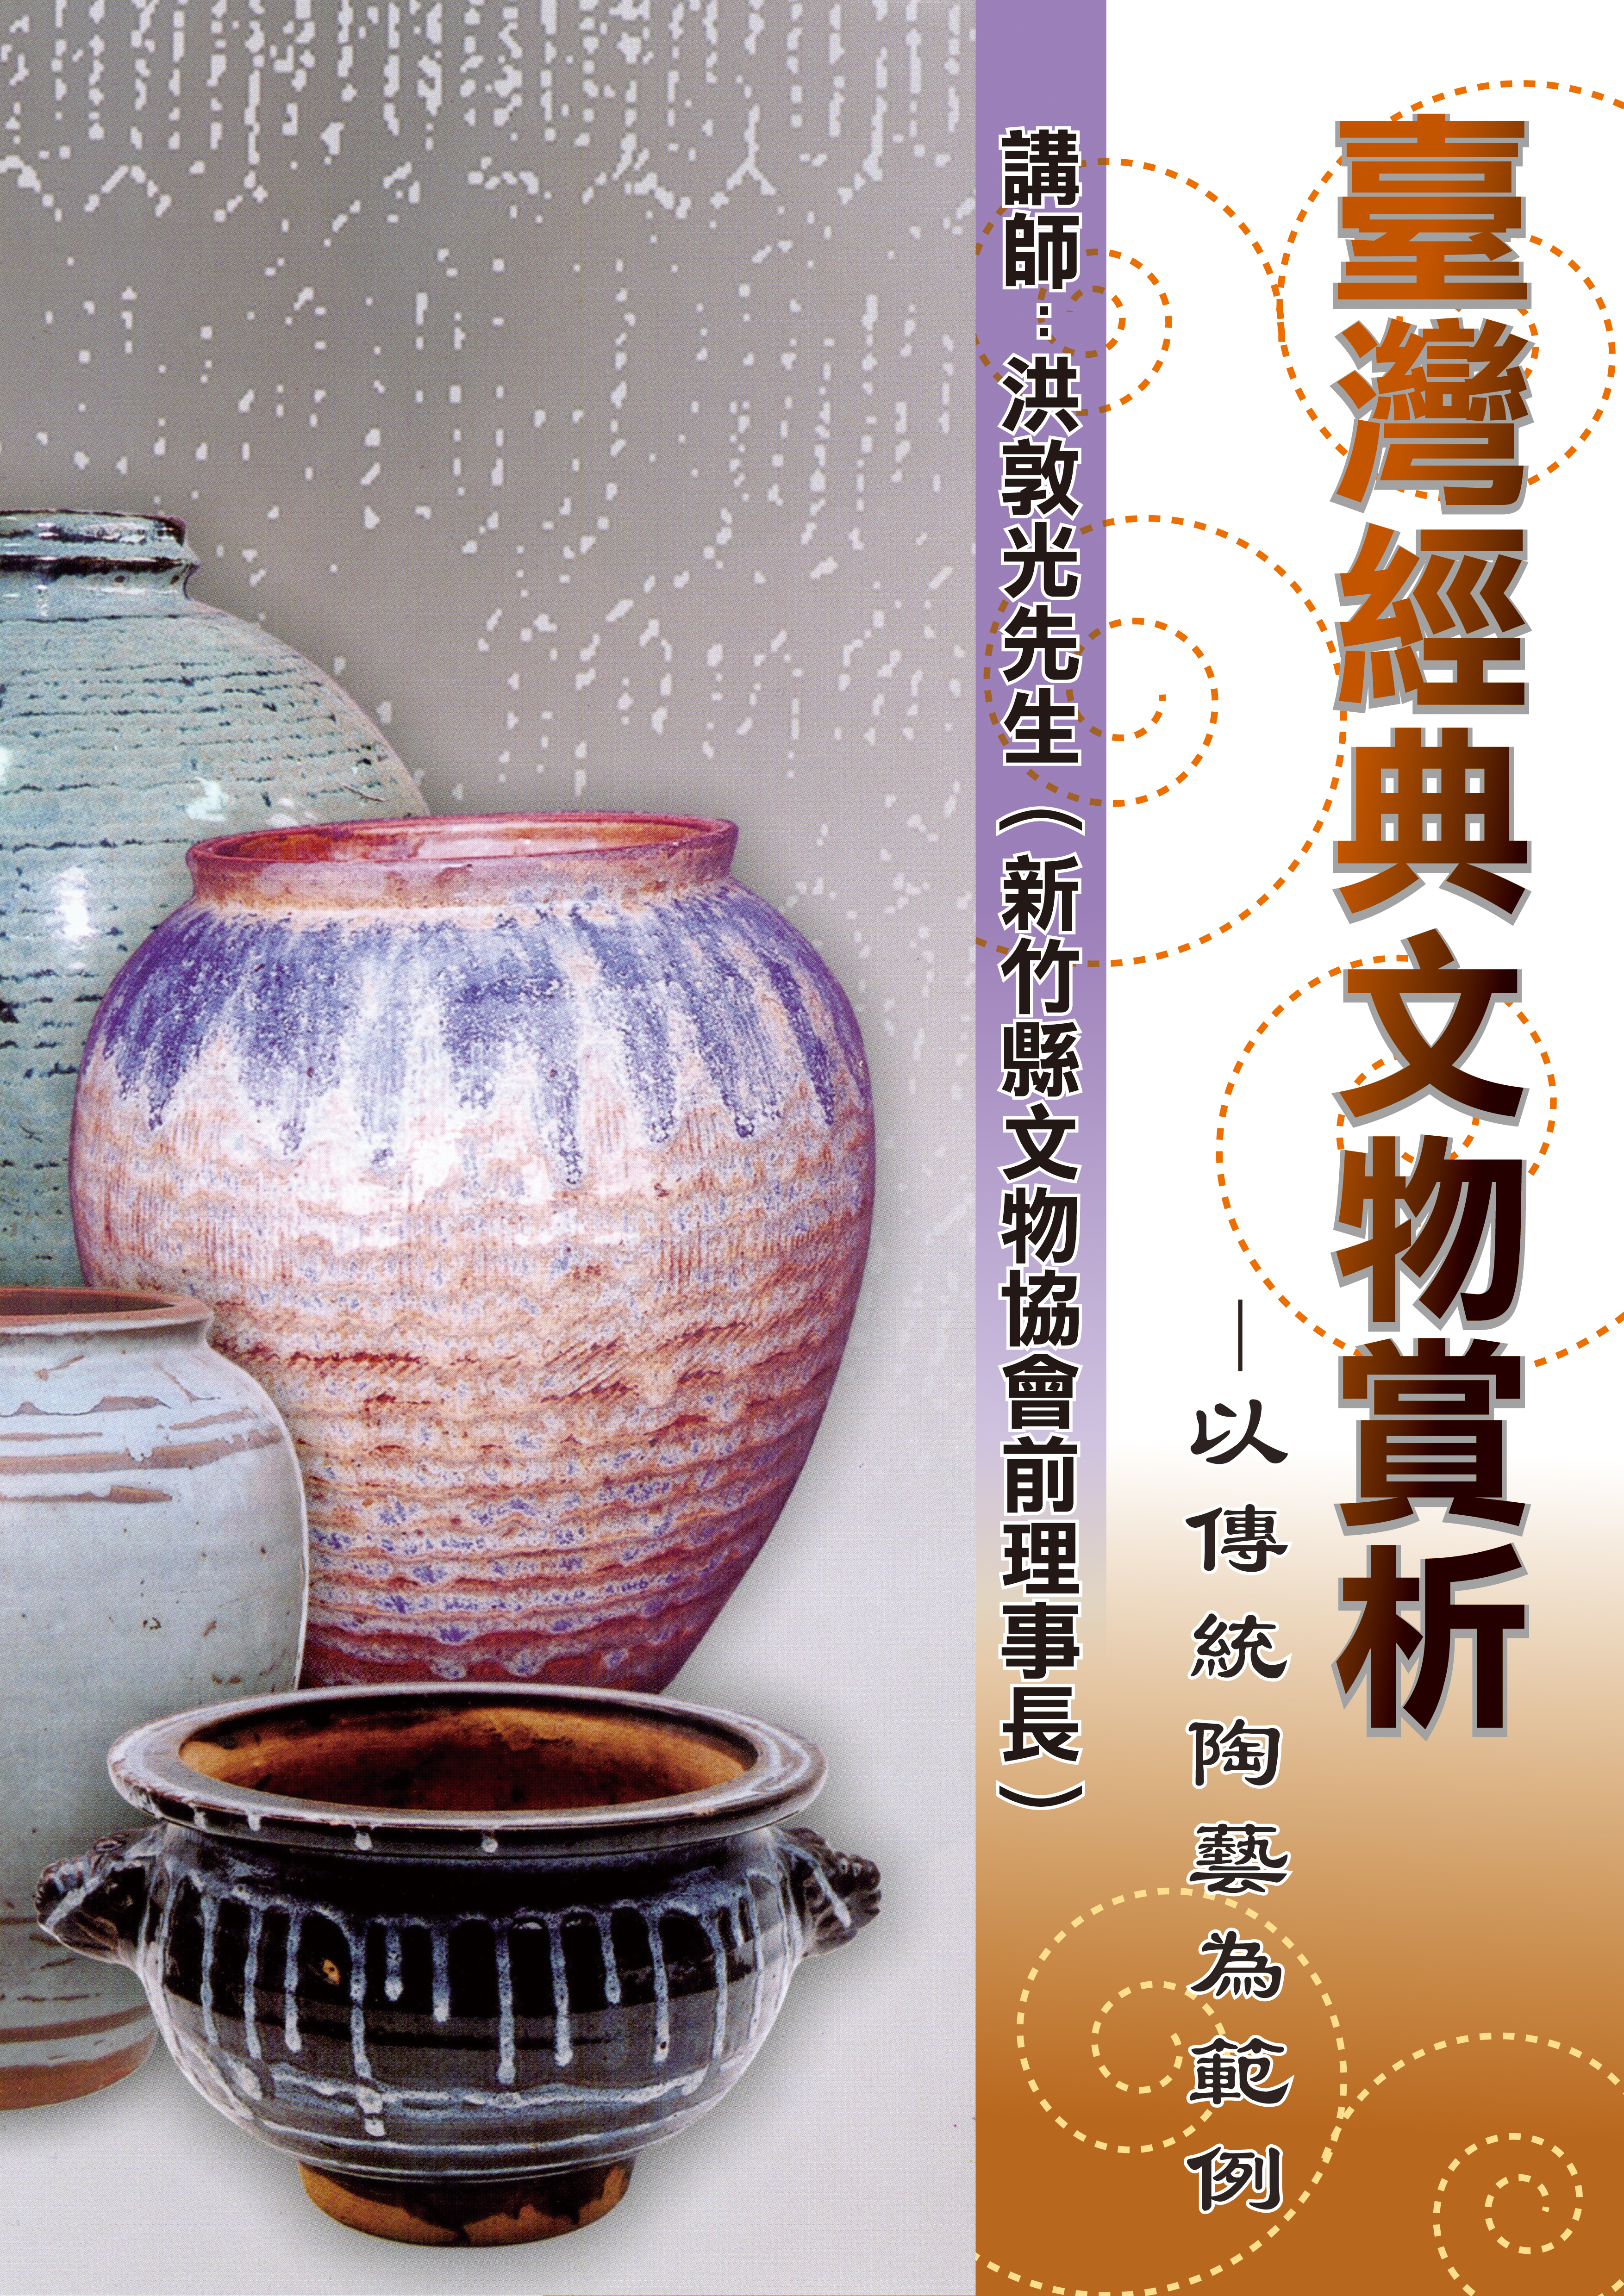 洪敦光先生蒞館主講「臺灣經典文物賞析—以傳統陶藝為範例」